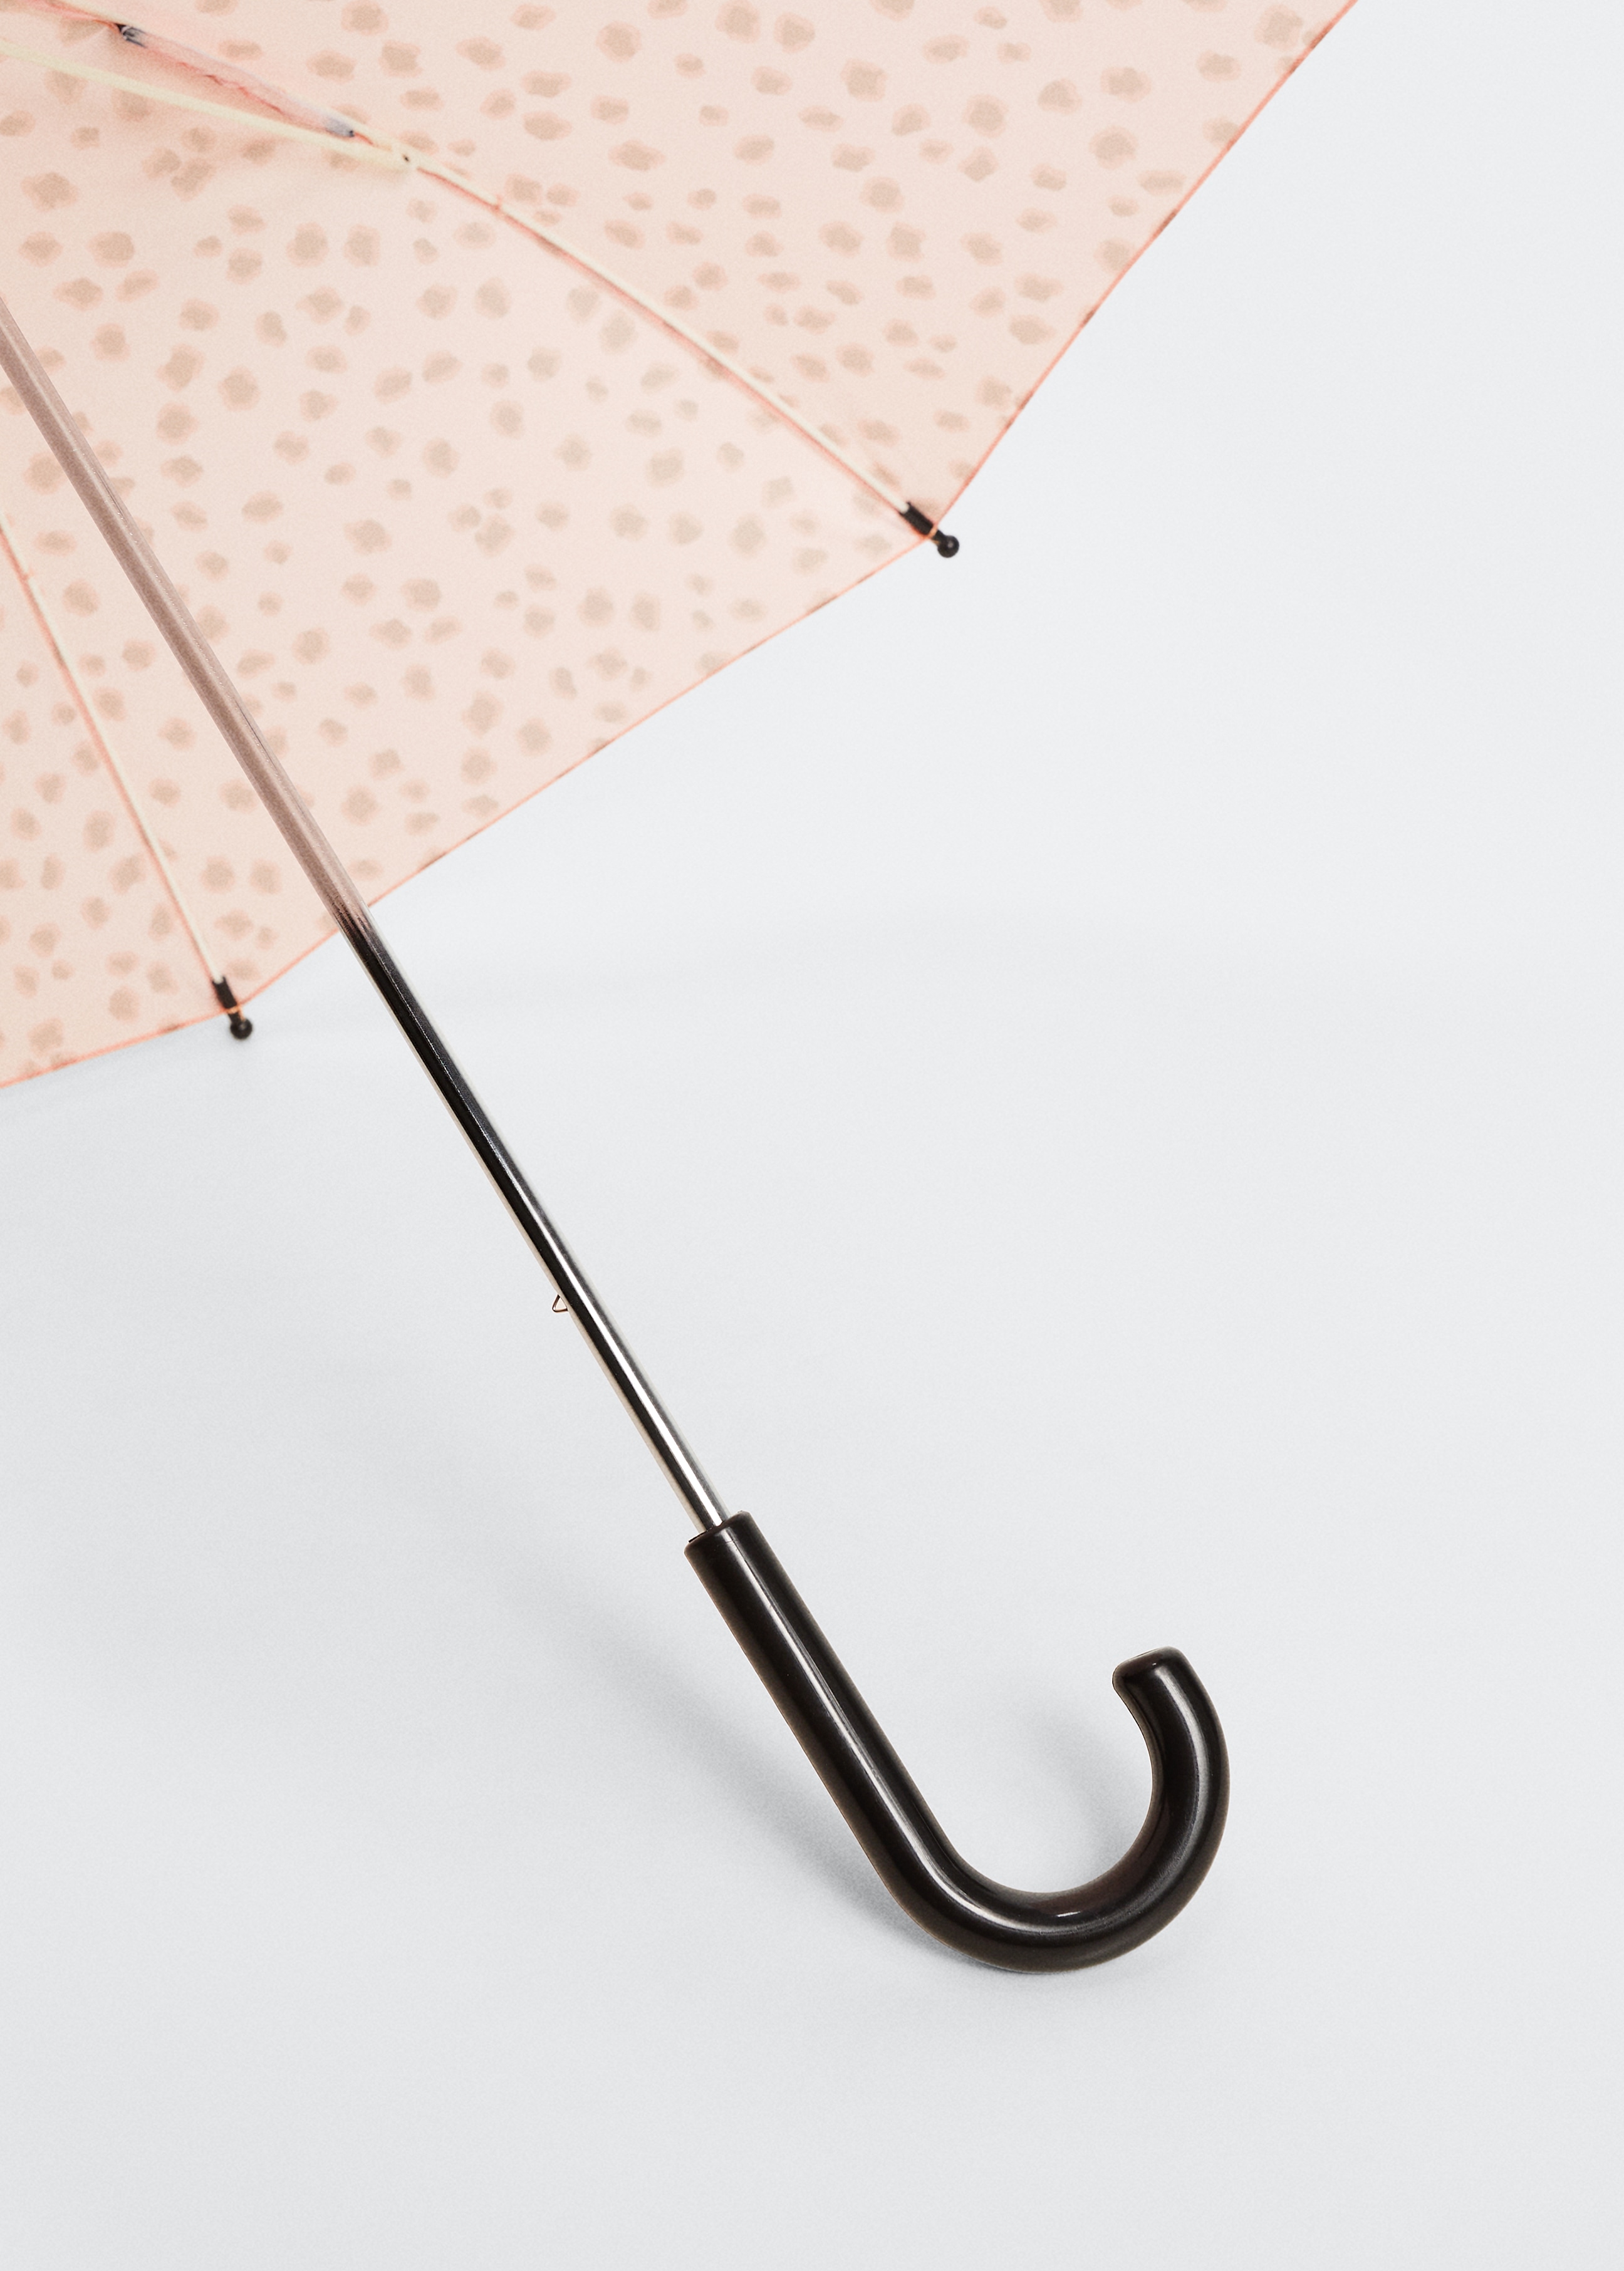 Guarda-chuva com estampado de orelhinhas - Pormenor do artigo 1